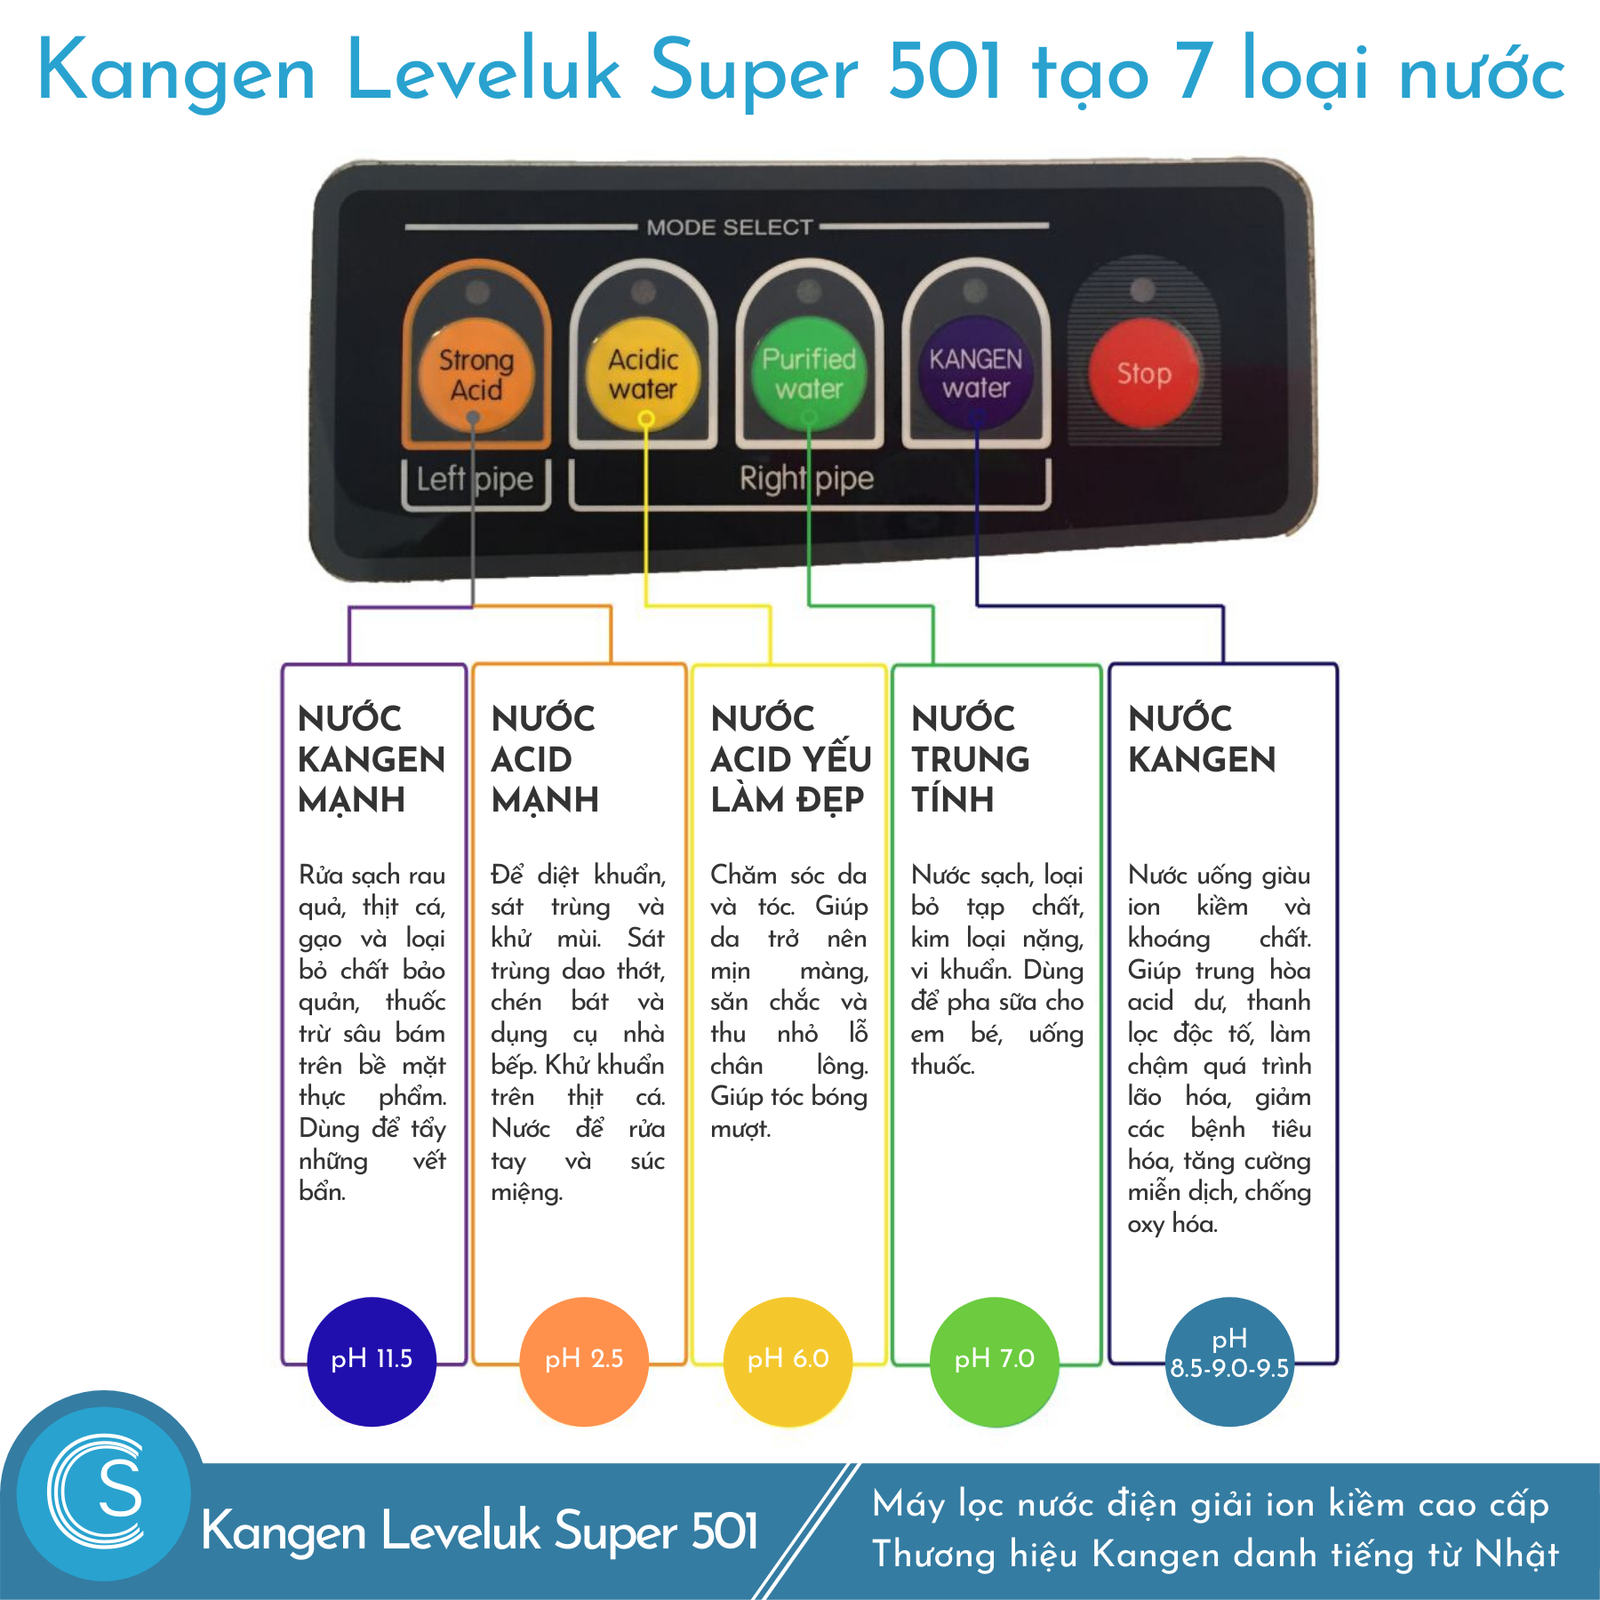 Kangen Leveluk Super 501